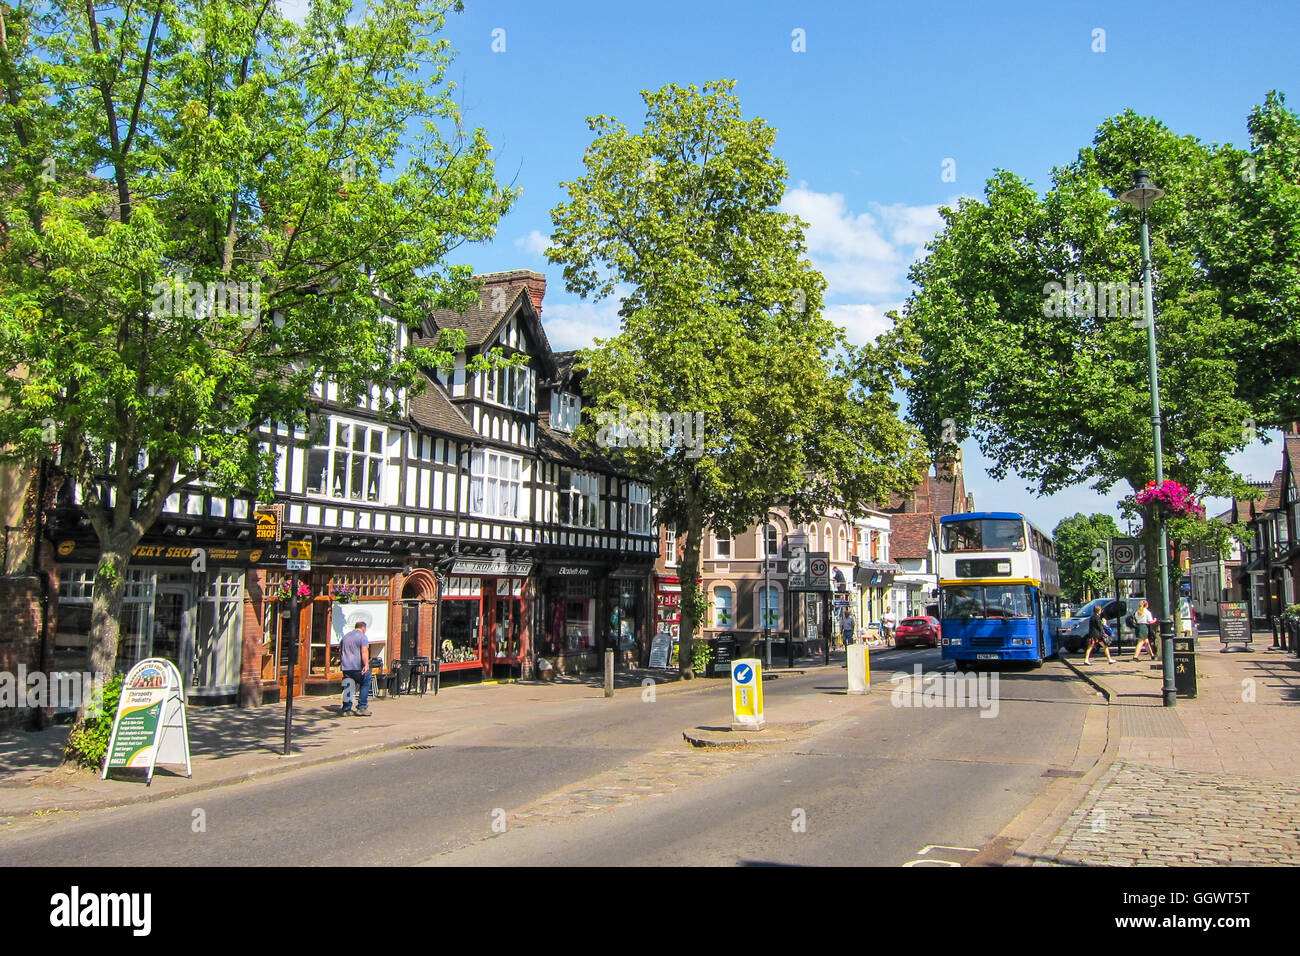 High Street, la principale arteria commerciale nel centro della città di Berkhamsted, Regno Unito Foto Stock